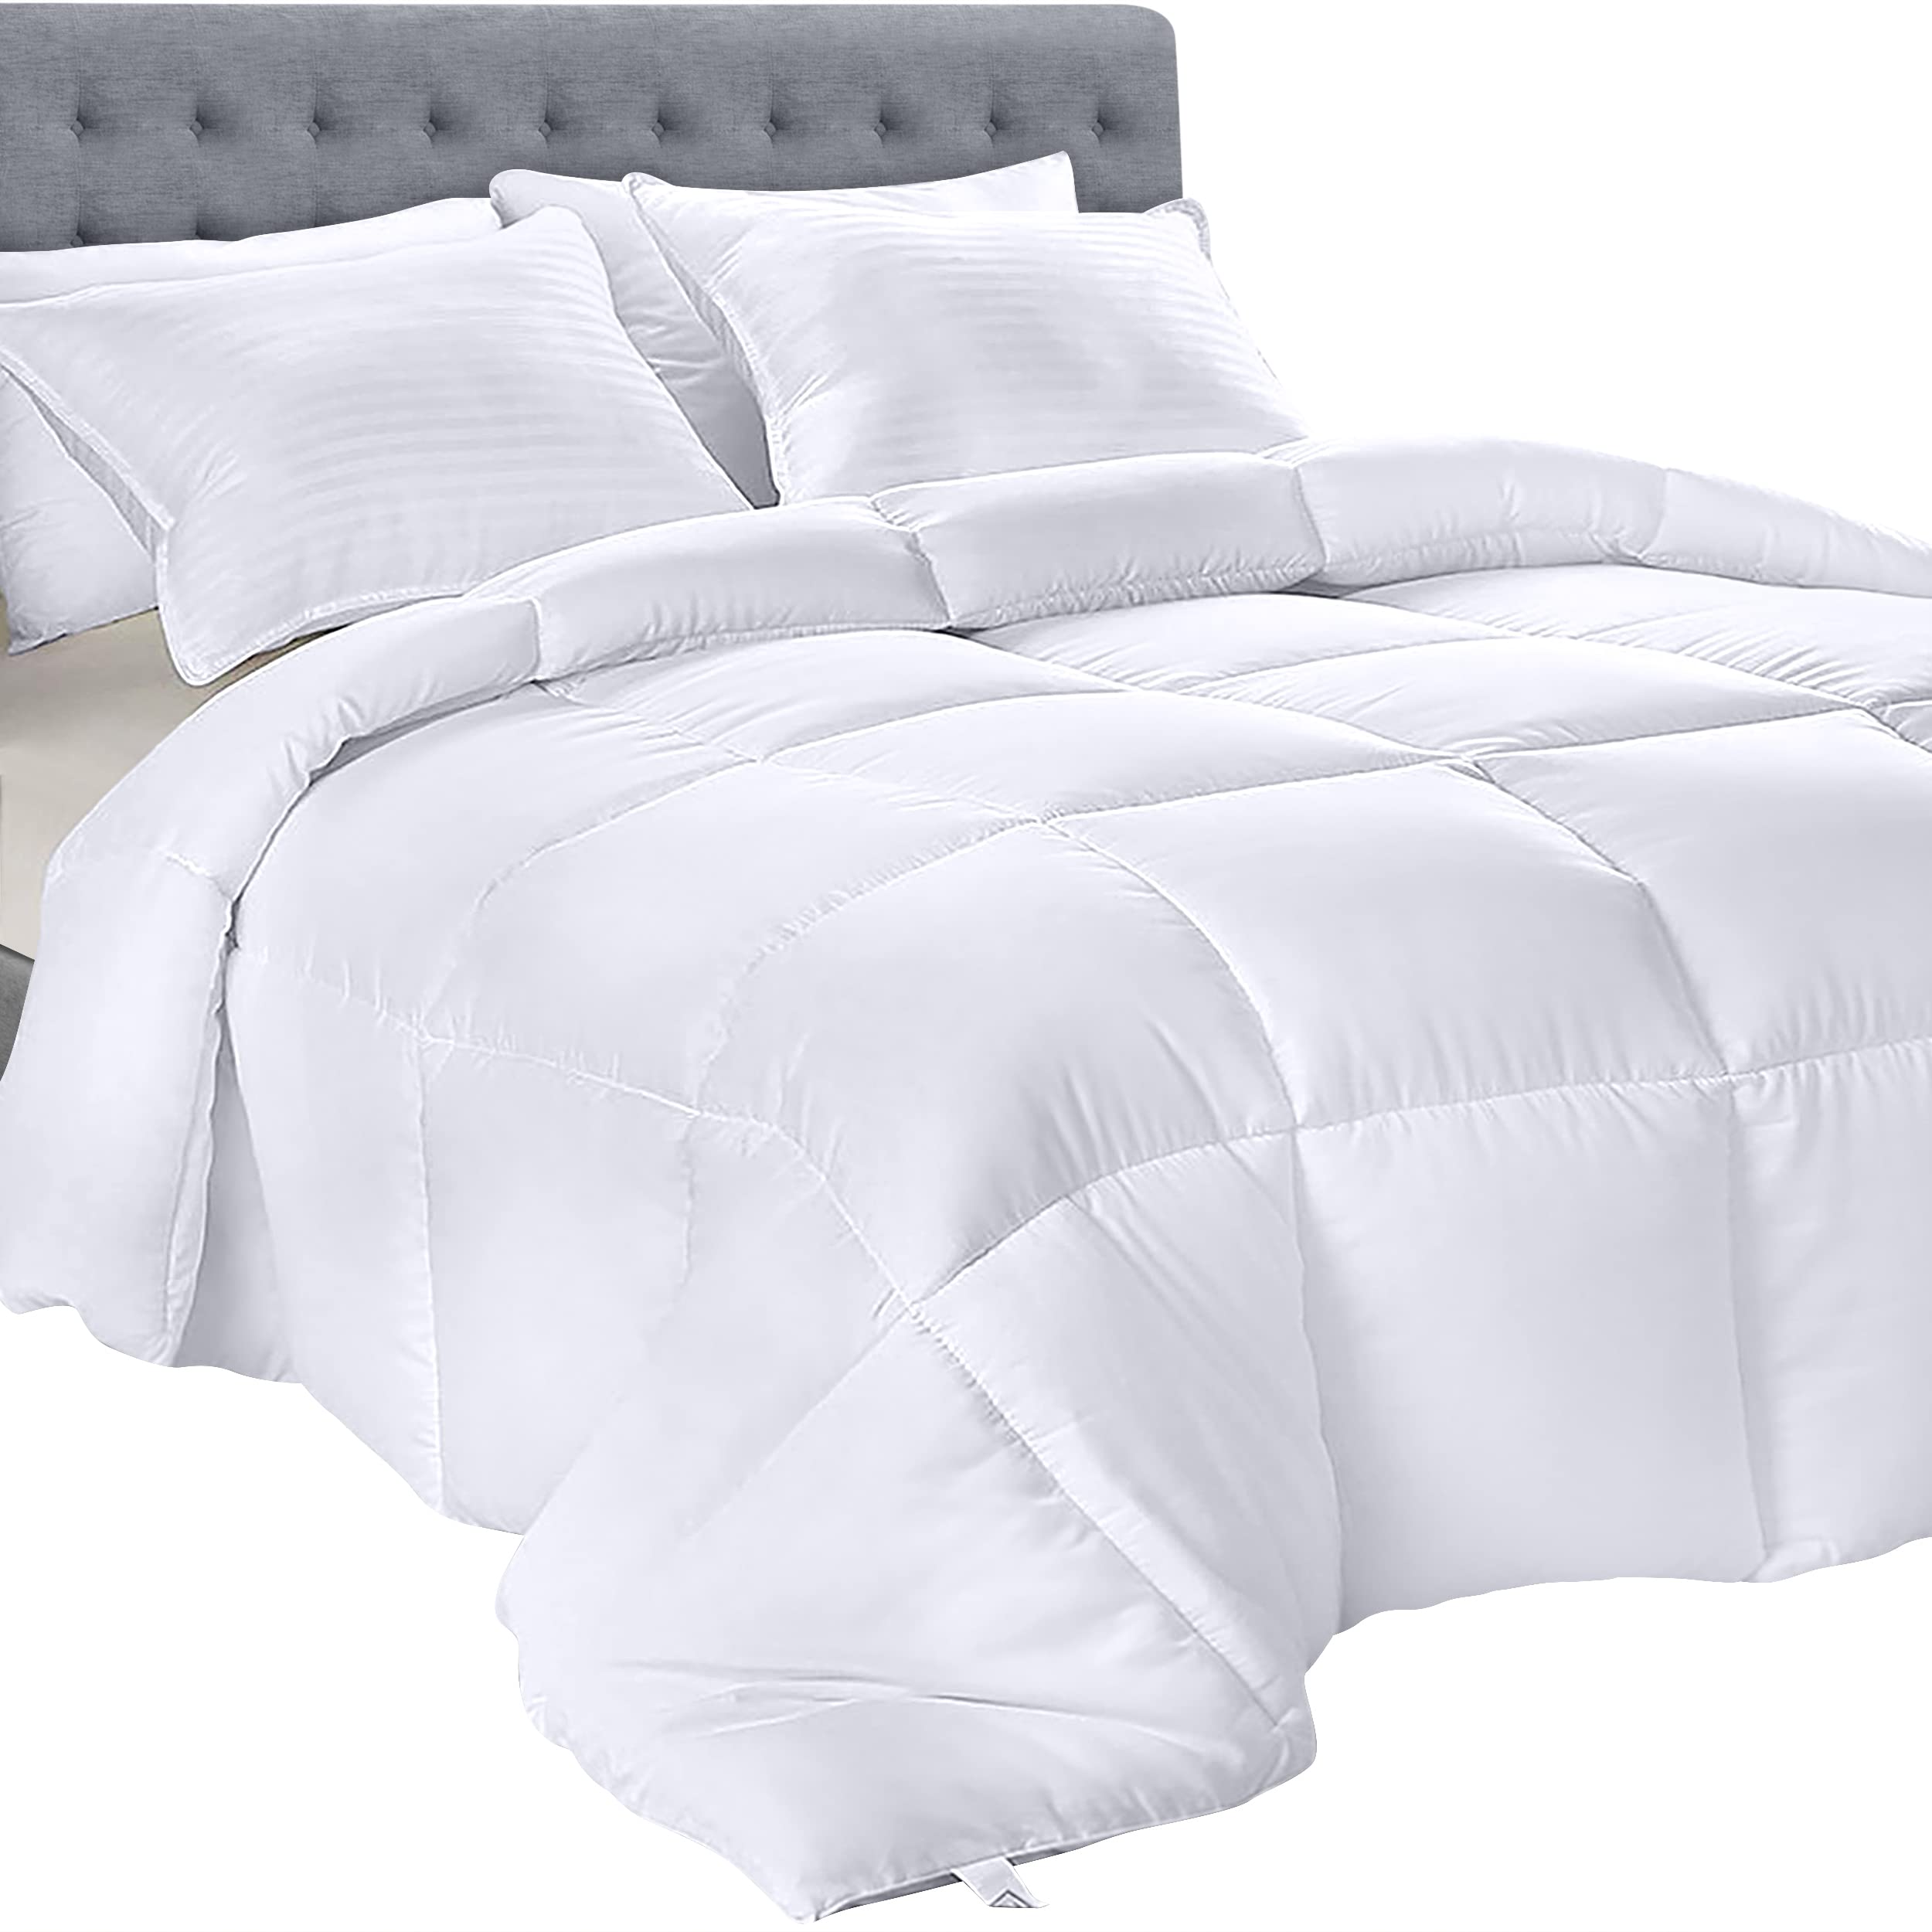 Book Cover Utopia Bedding Comforter - All Season California Comforter - White Cal King Comforter - Plush Siliconized Fiberfill - Box Stitched White California King